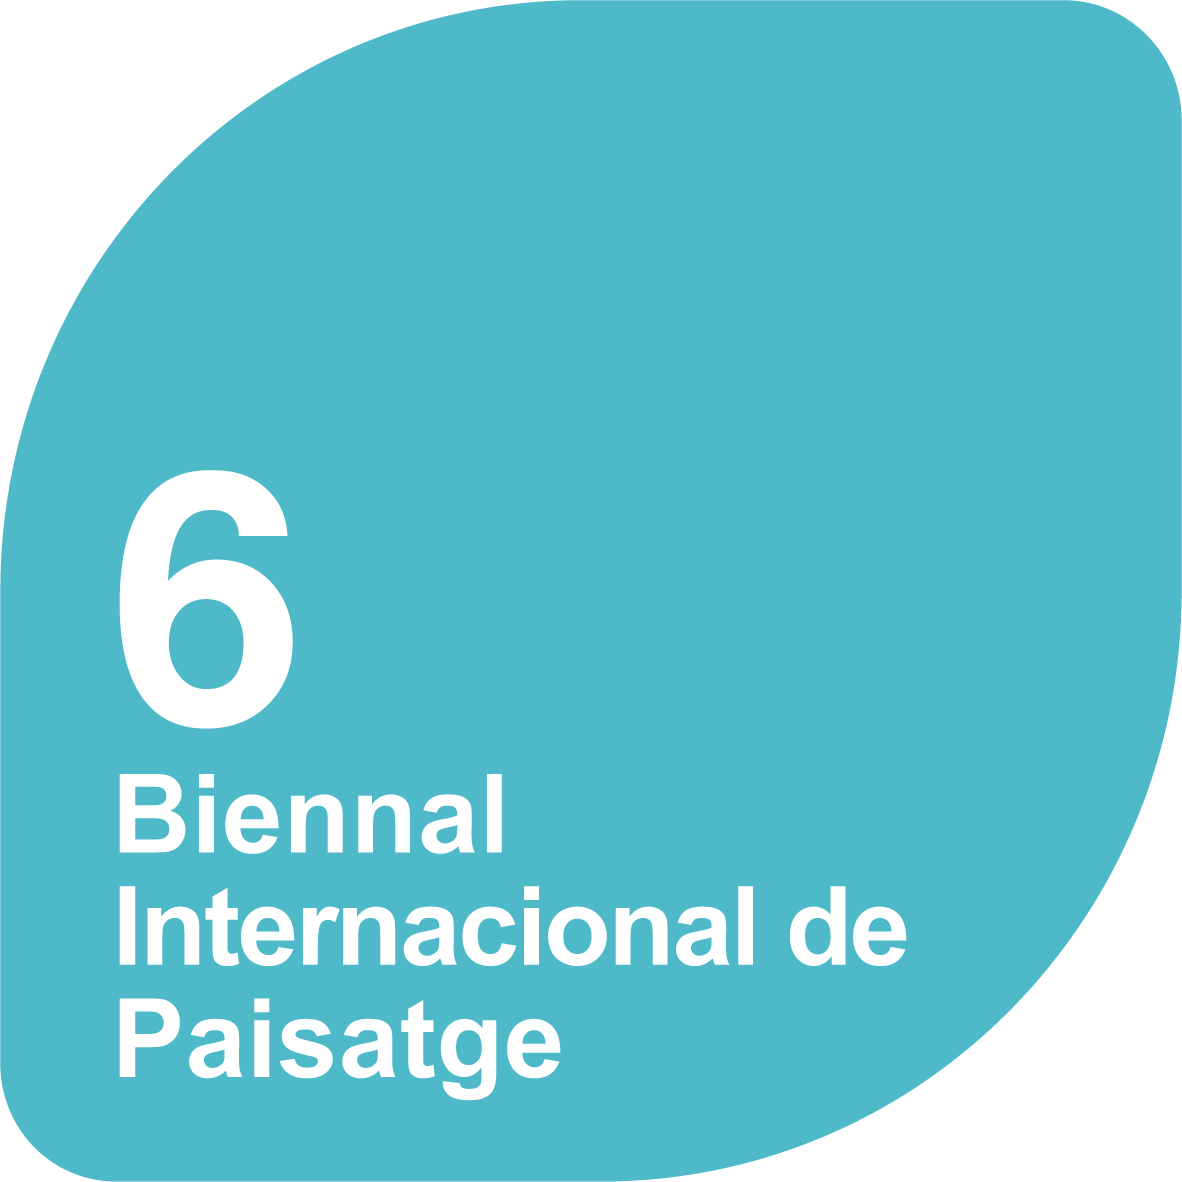 6a Biennal Internacional de Paisatge